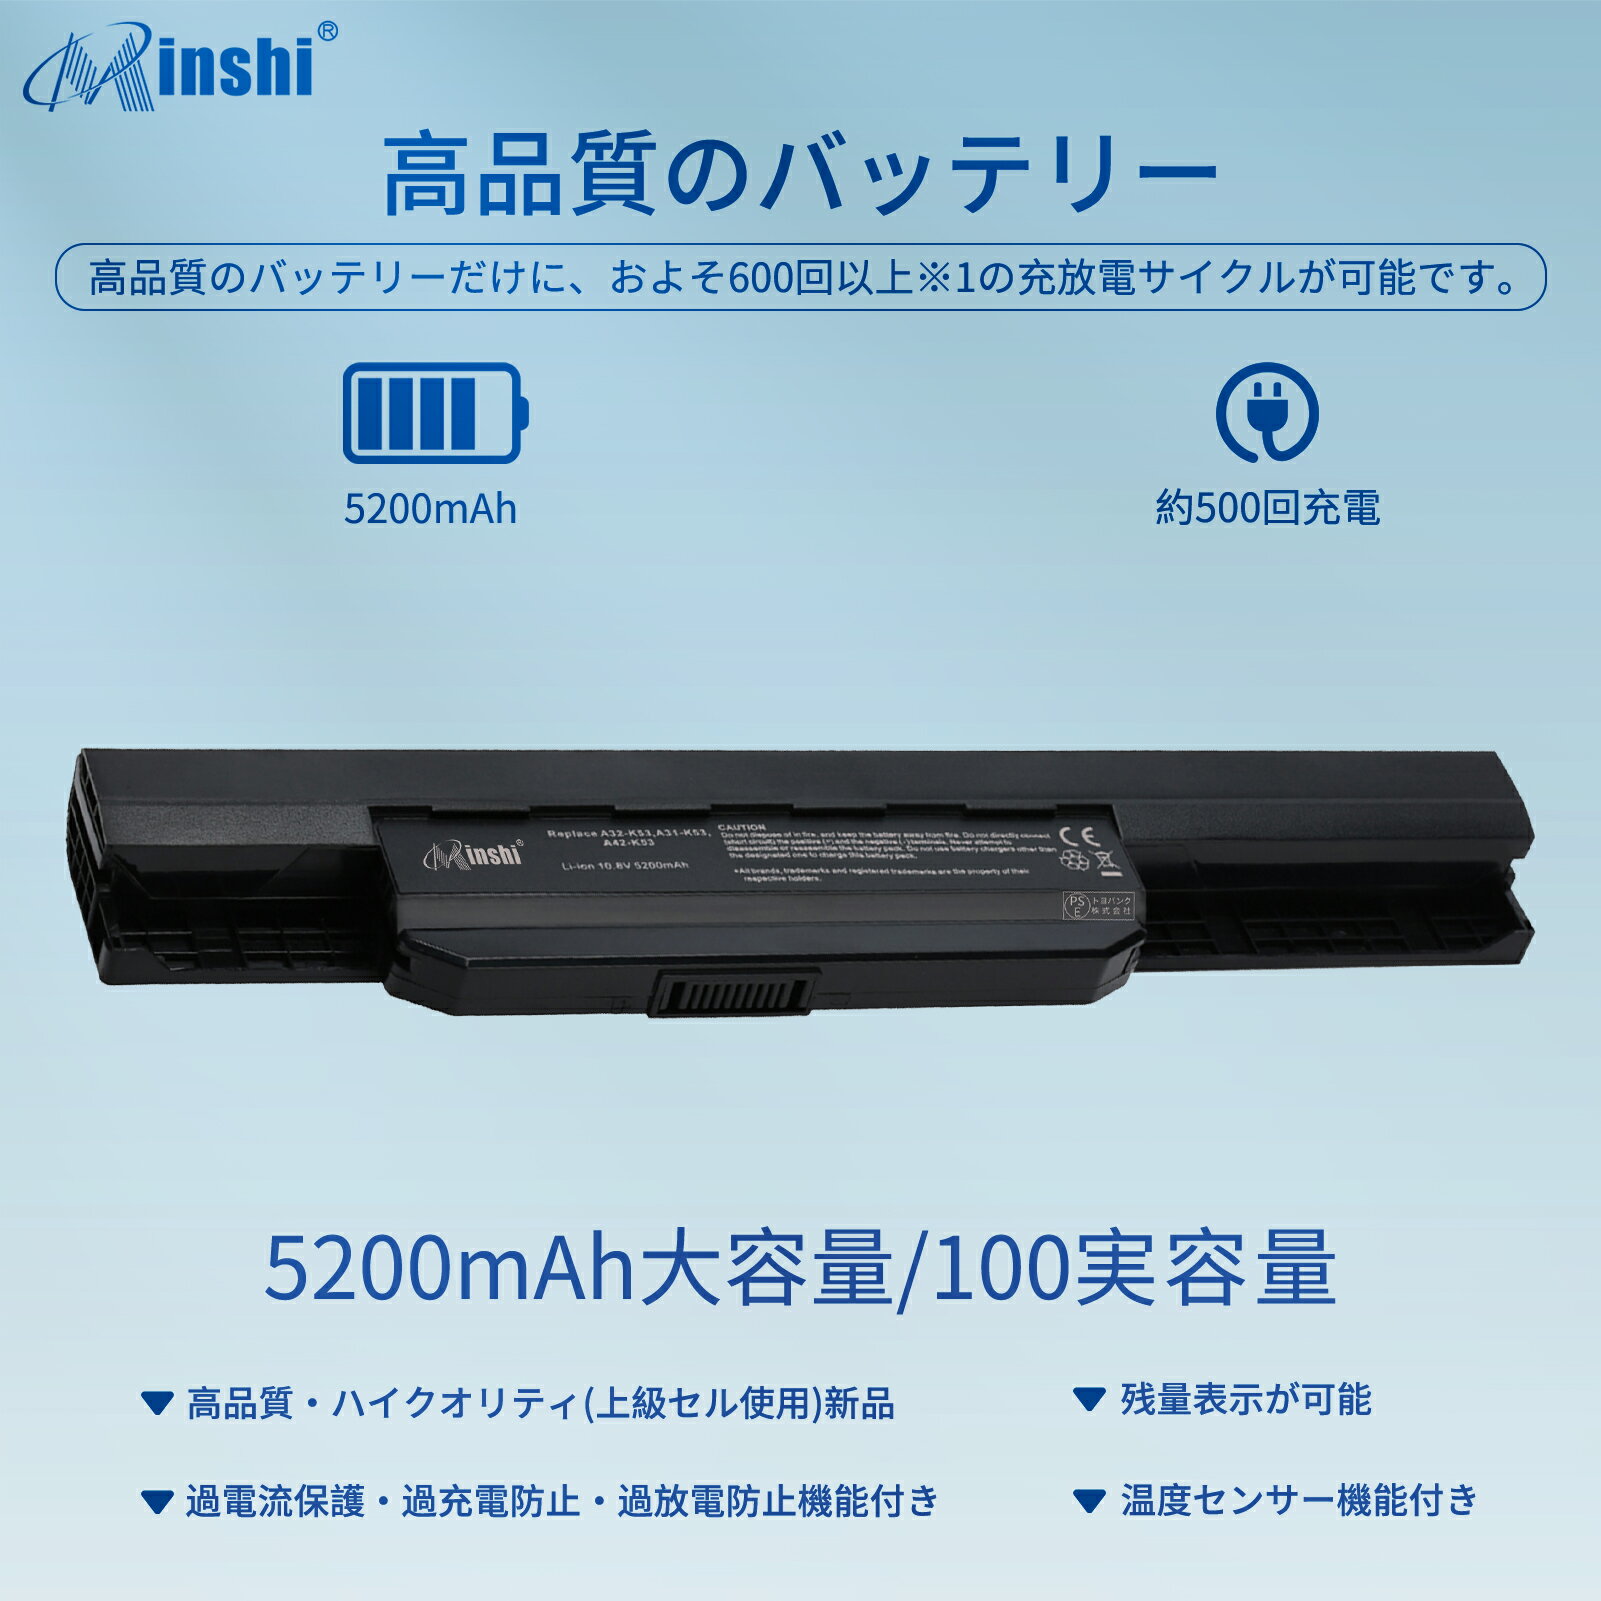 minshi 新品 ASUS X53X 互換バッテリー 対応 高品質交換用電池パック PSE認証 1年間保証 5200mAh 2